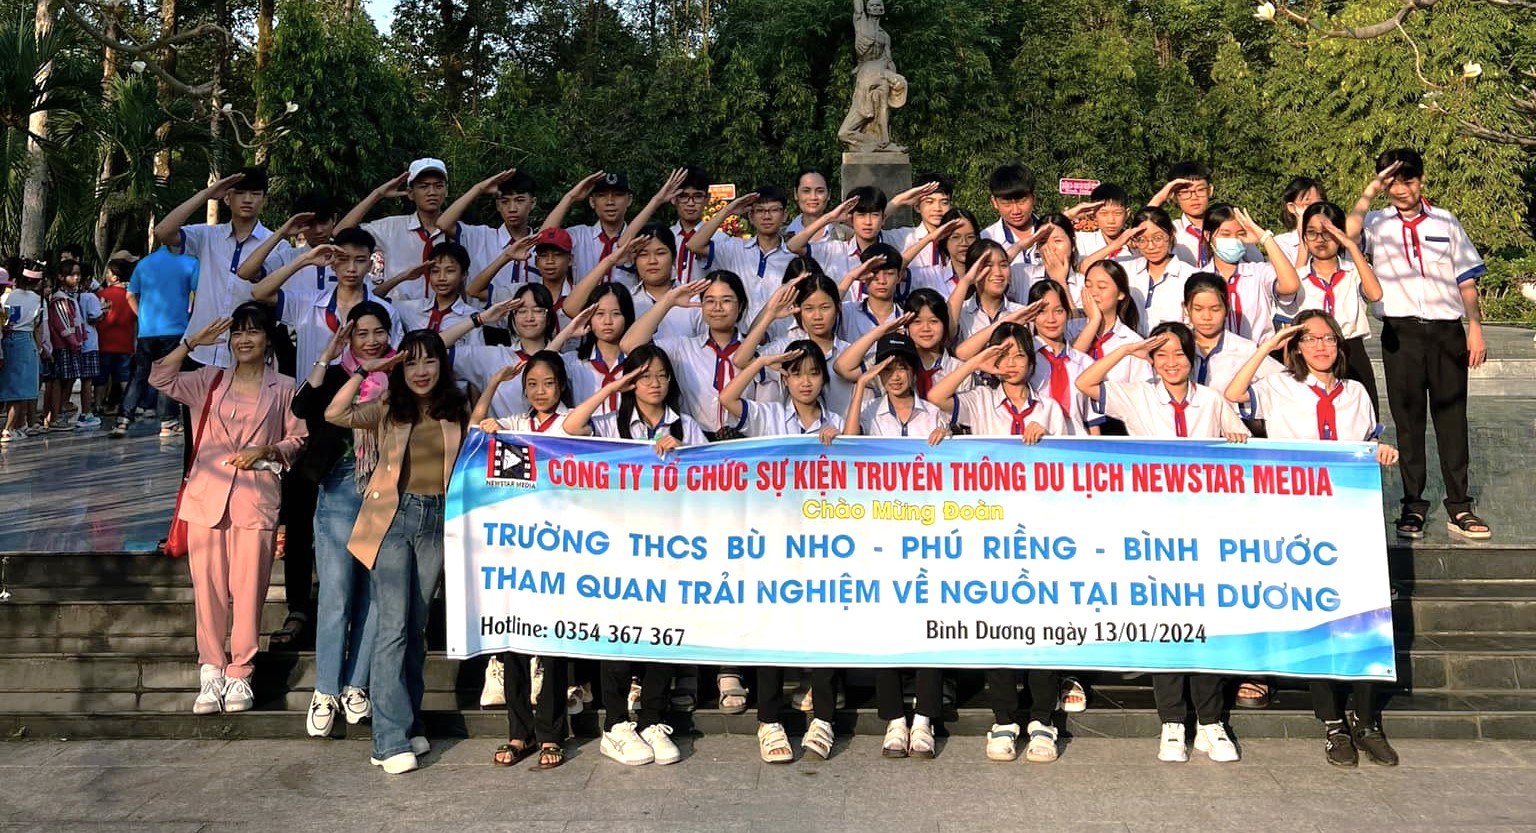 Trường TNHCS Bù Nho Tham Quan Trải Nghiệm Về Nguồn Tại Bình Dương Đầu Năm 2024